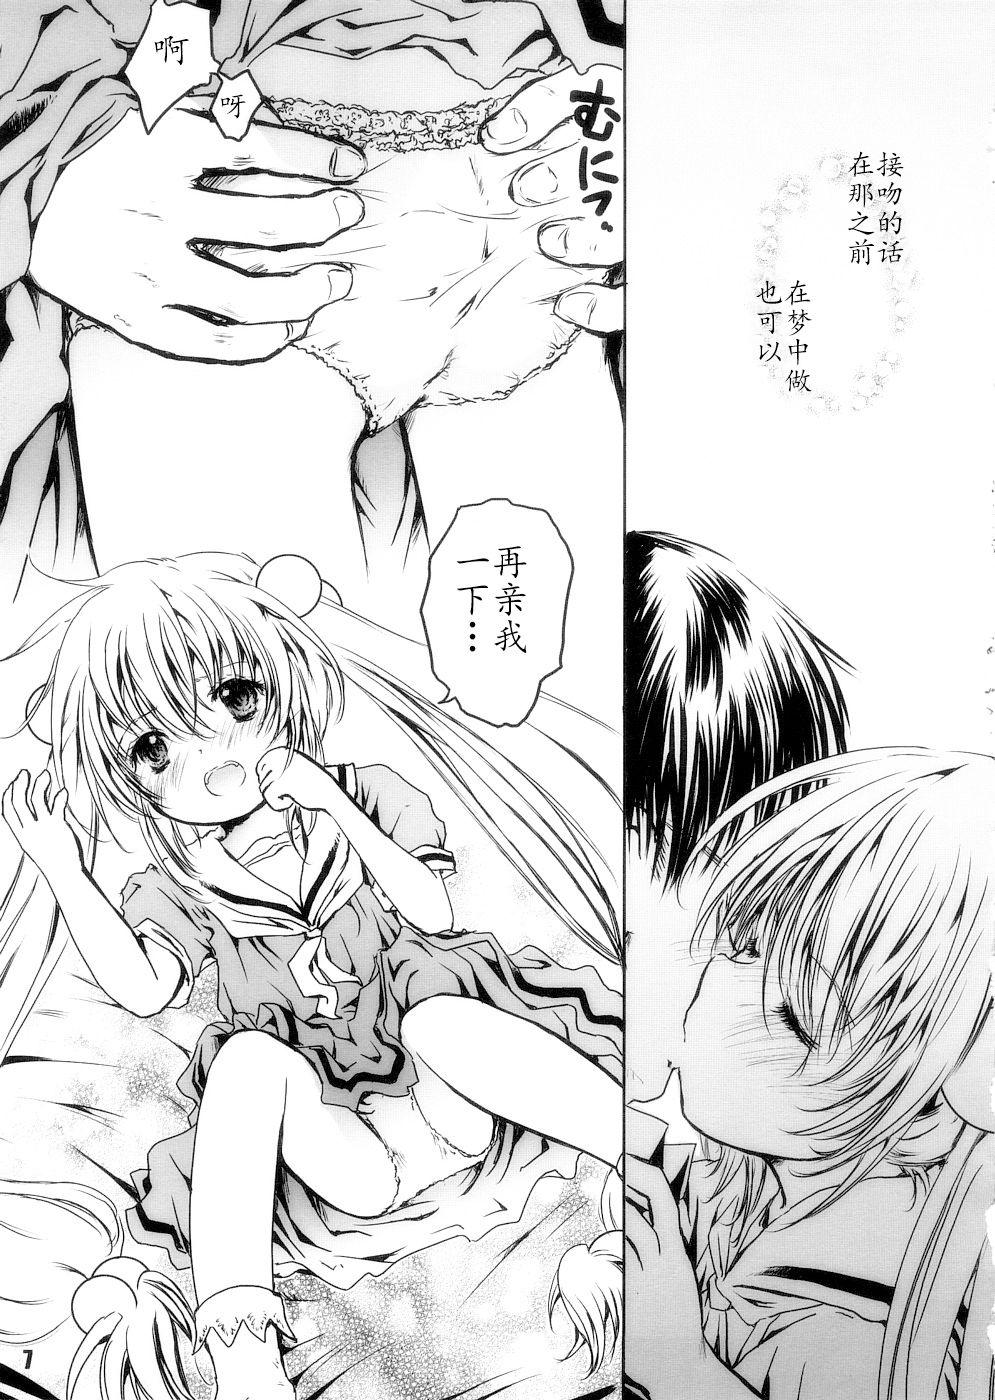 Girls Yumemiru Jikan - Kodomo no jikan Gordinha - Page 6